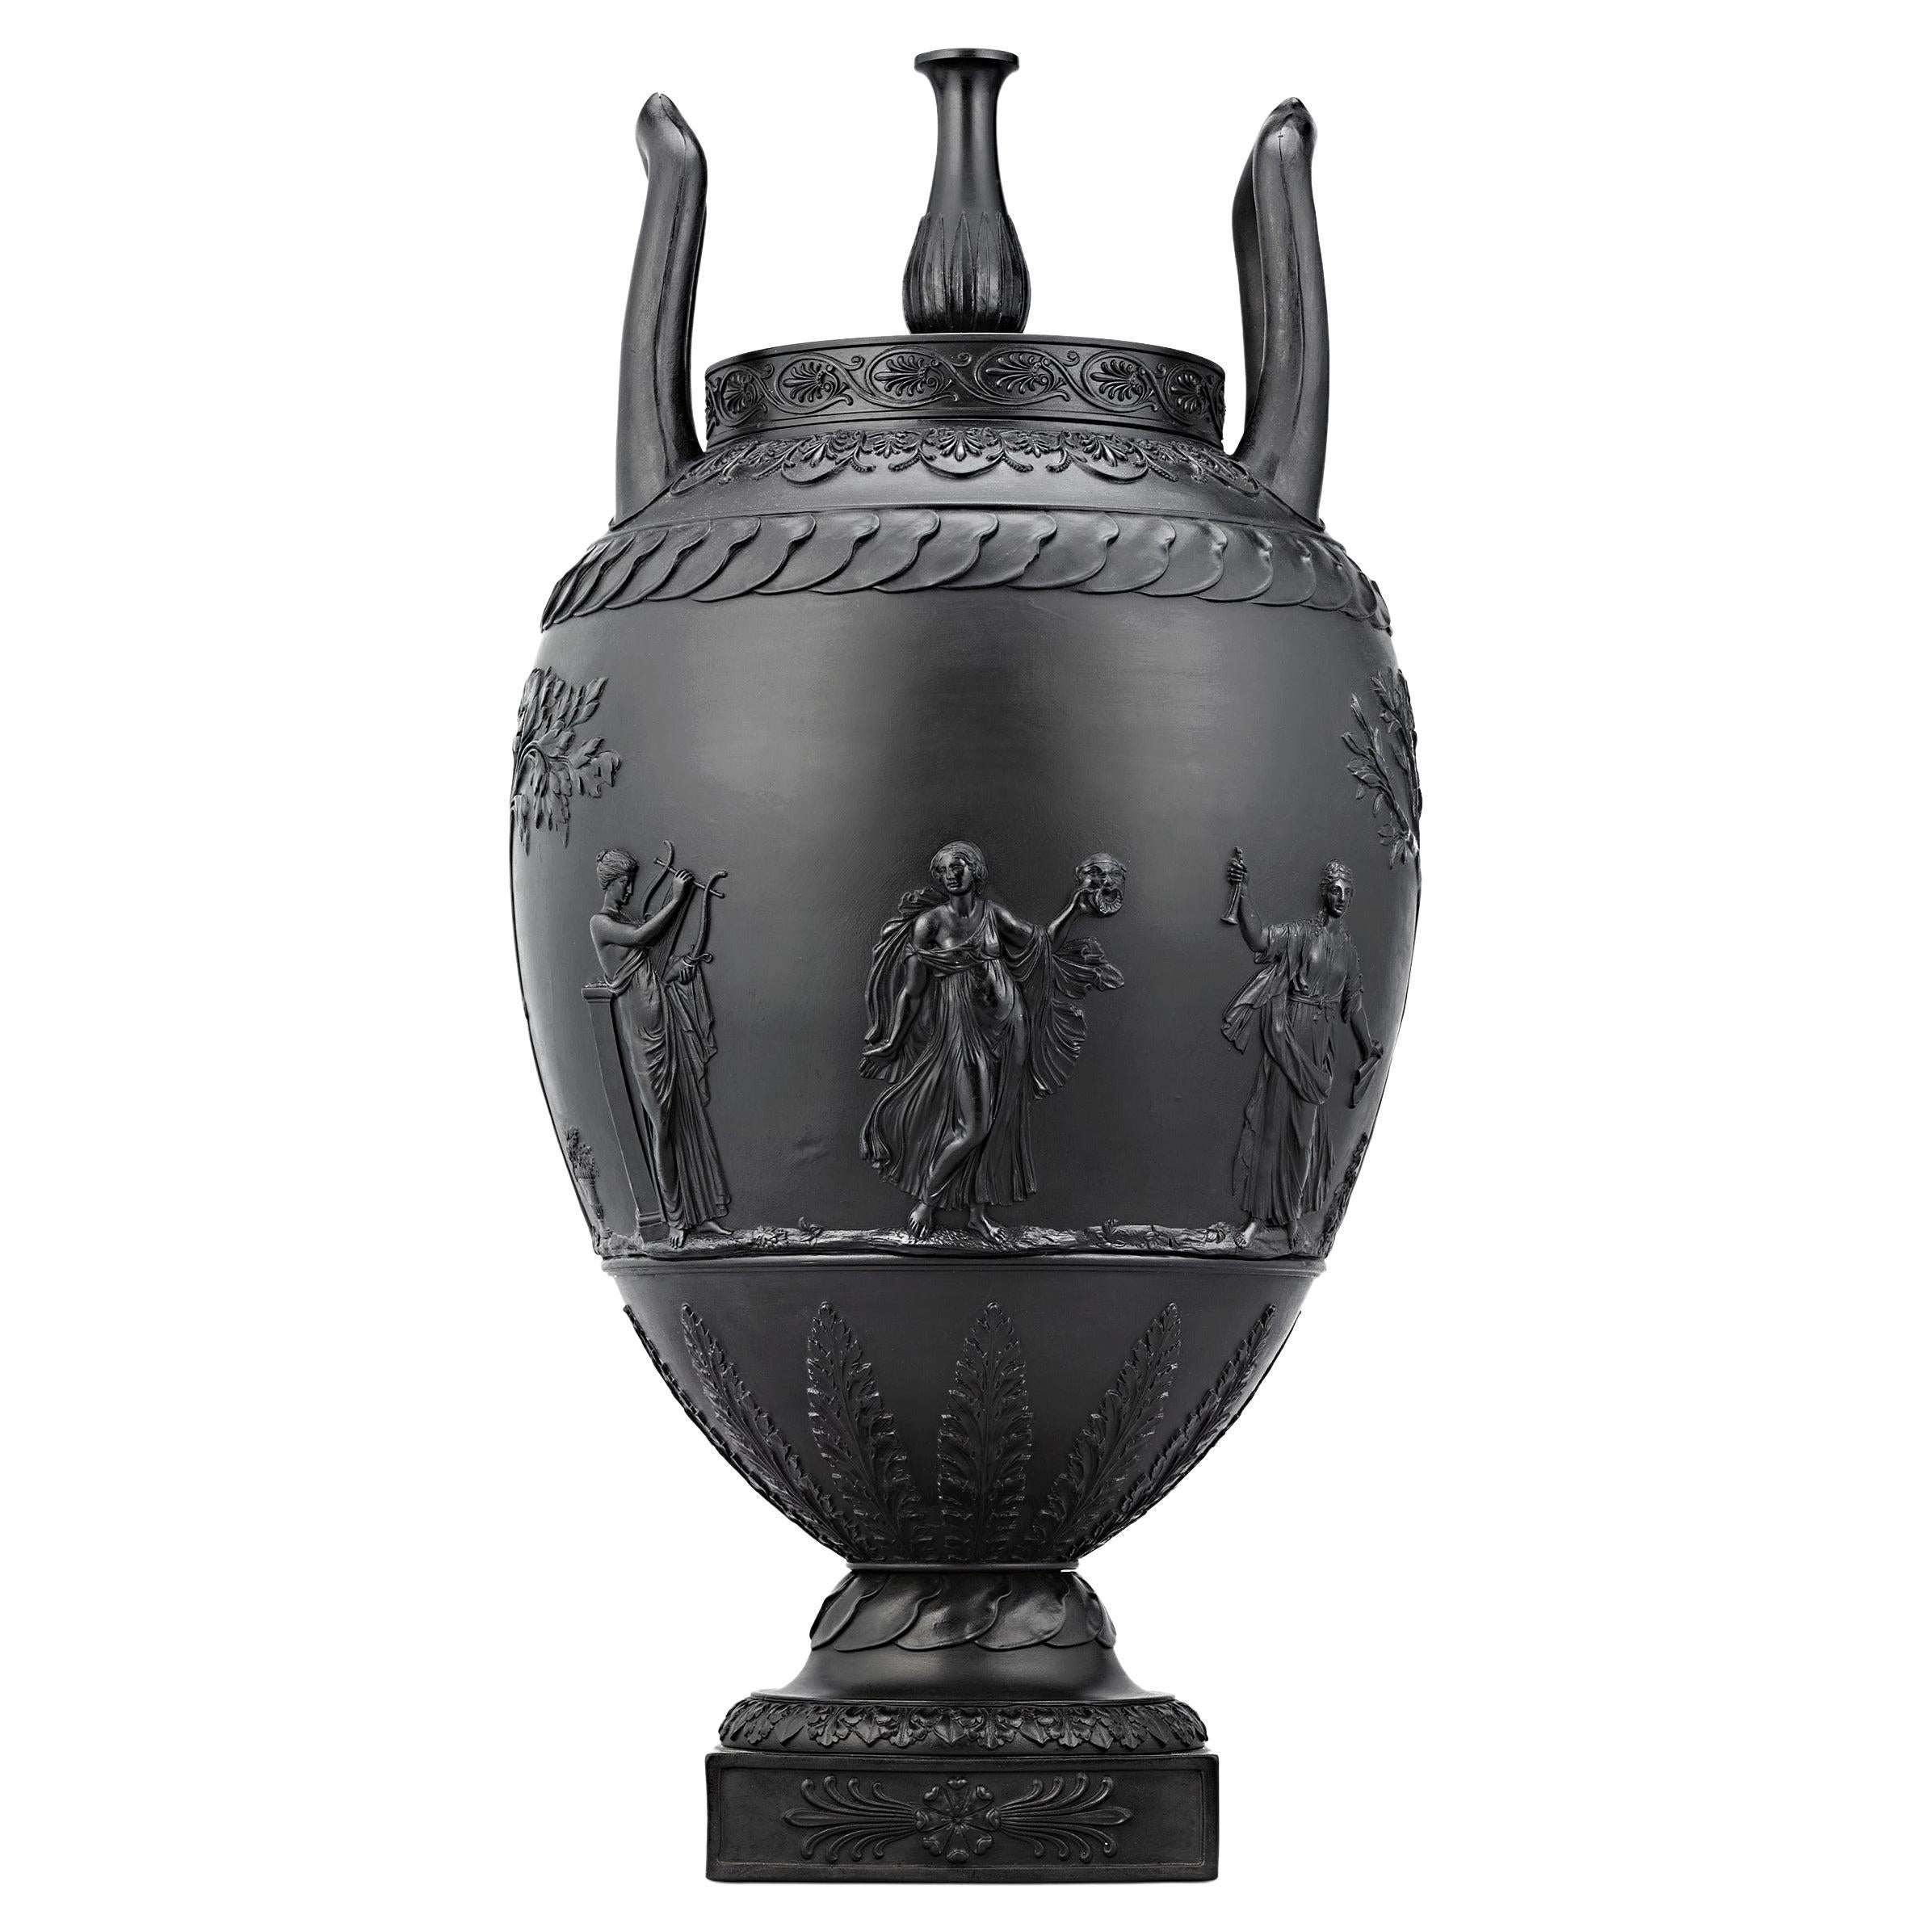 Wedgwood Black Basalt Two-Handled Urn For Sale